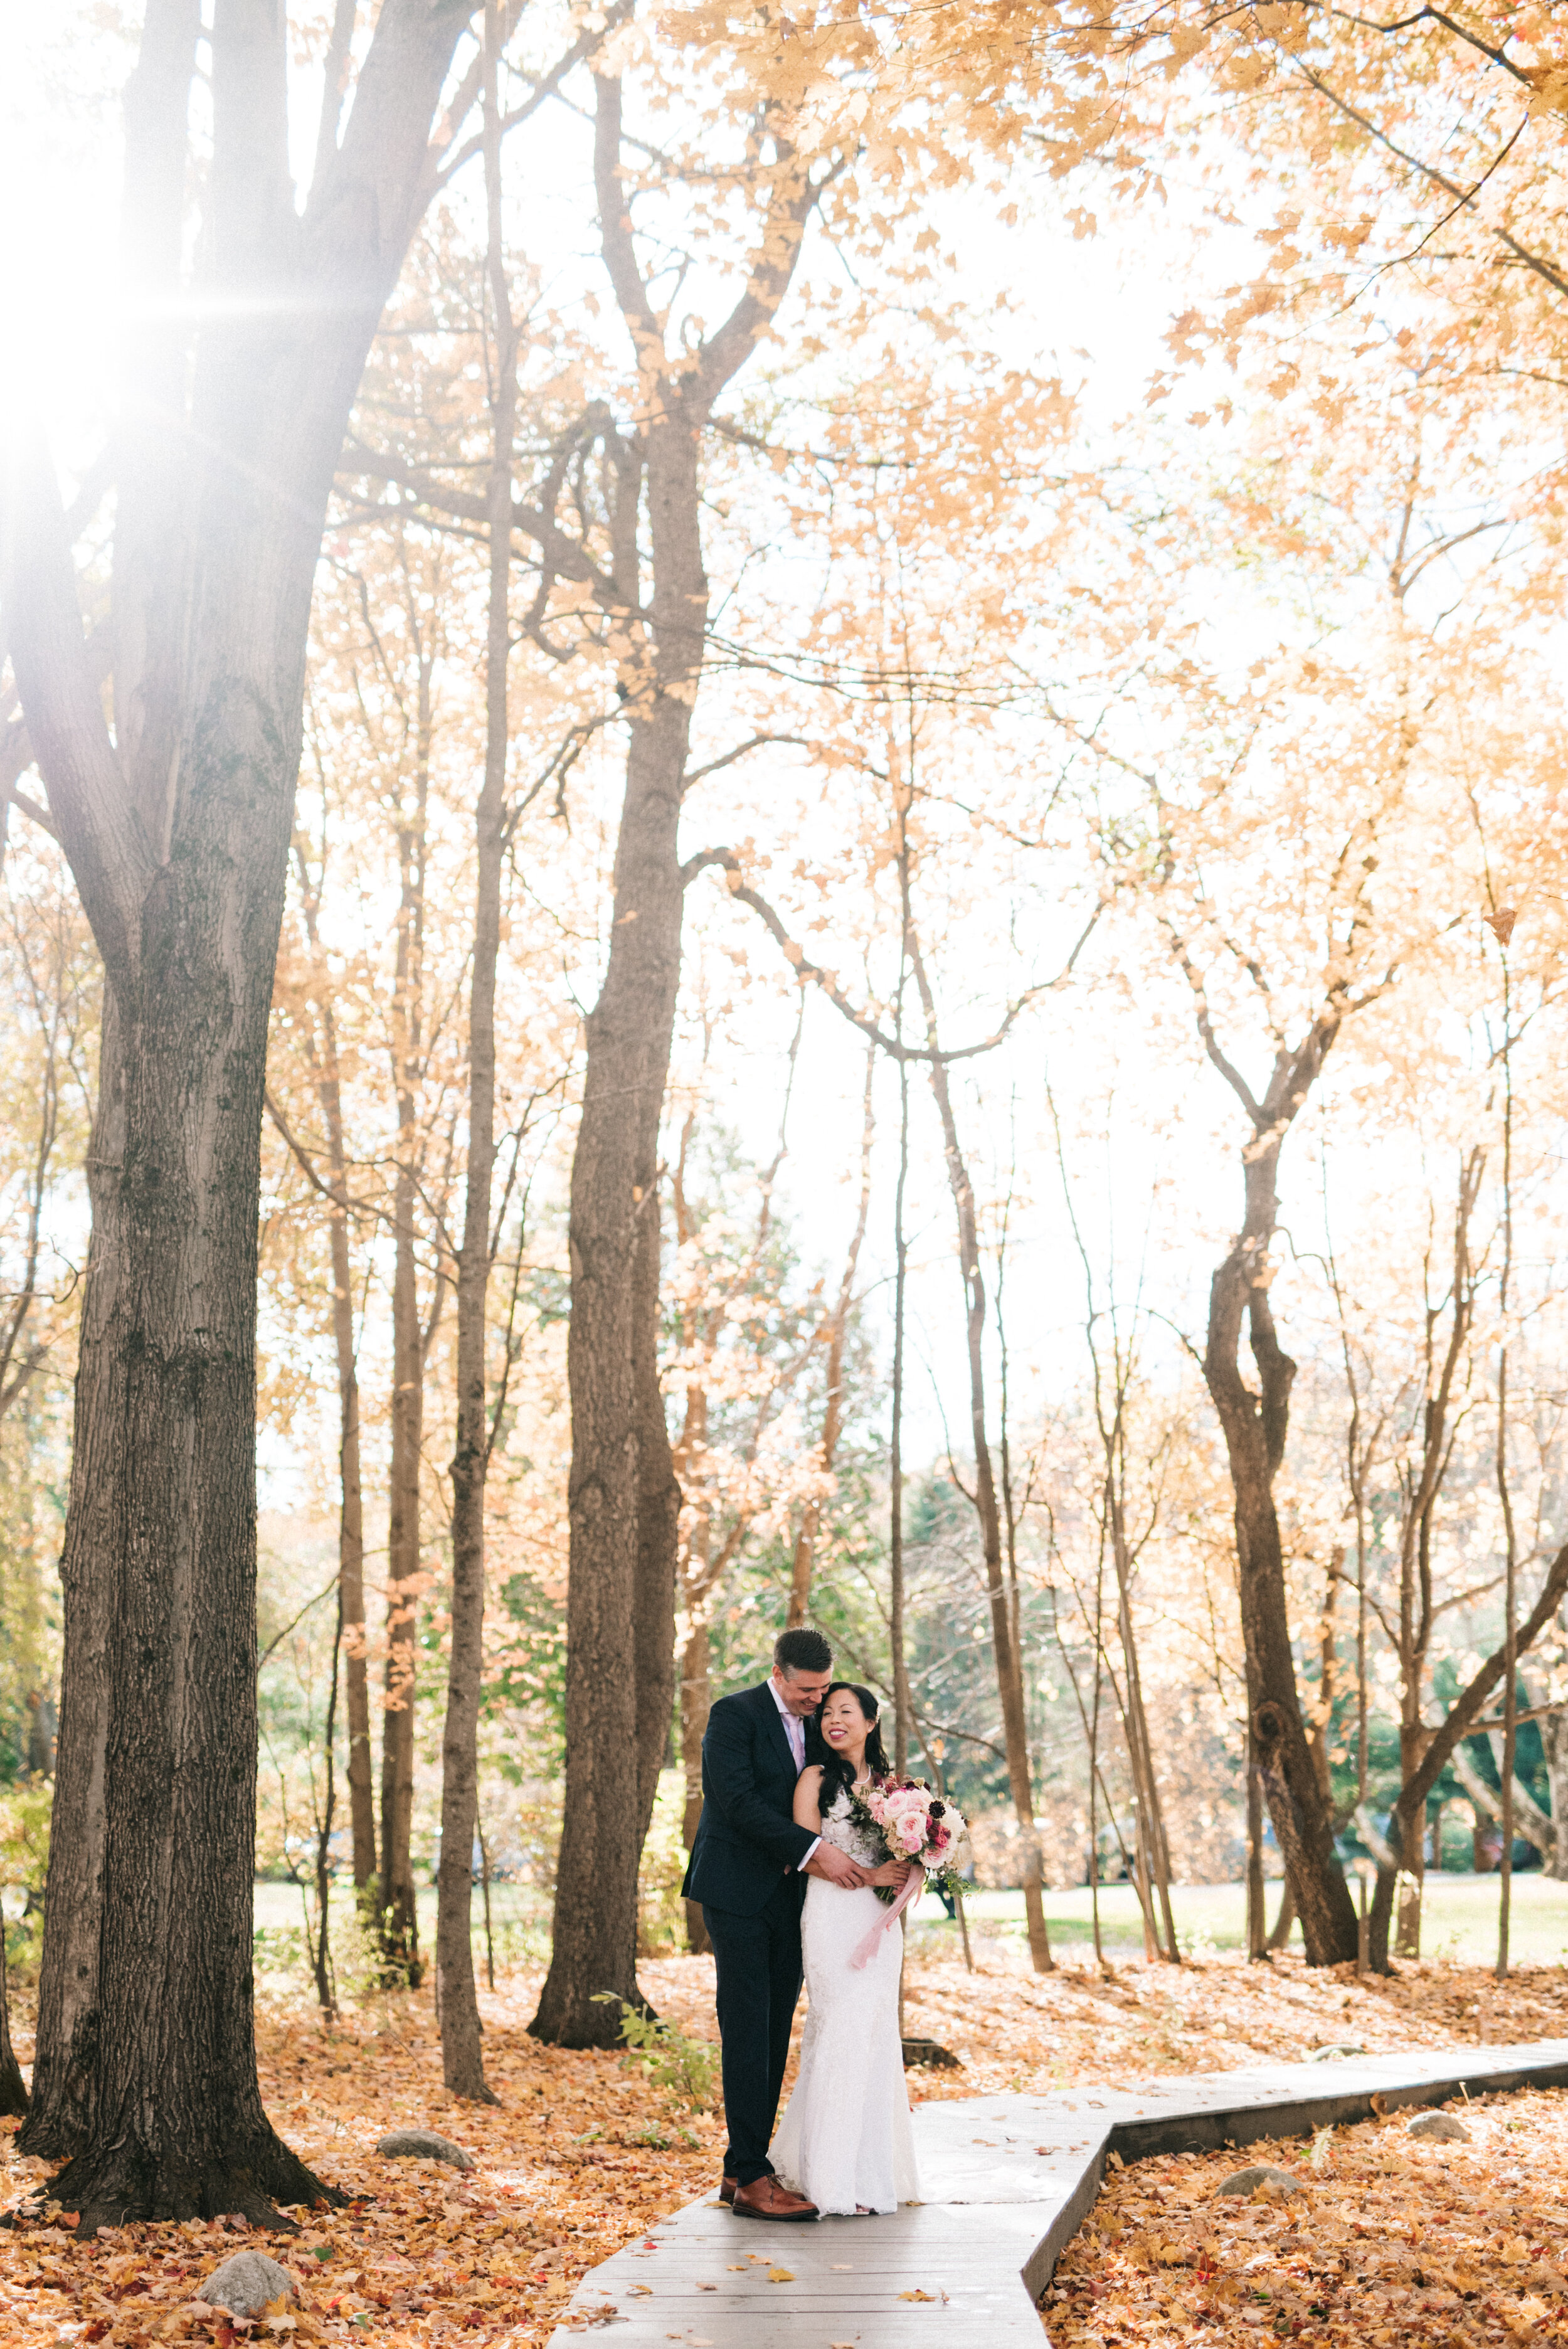 Fall wedding in sancuary photo by gabby Riggieri.jpg